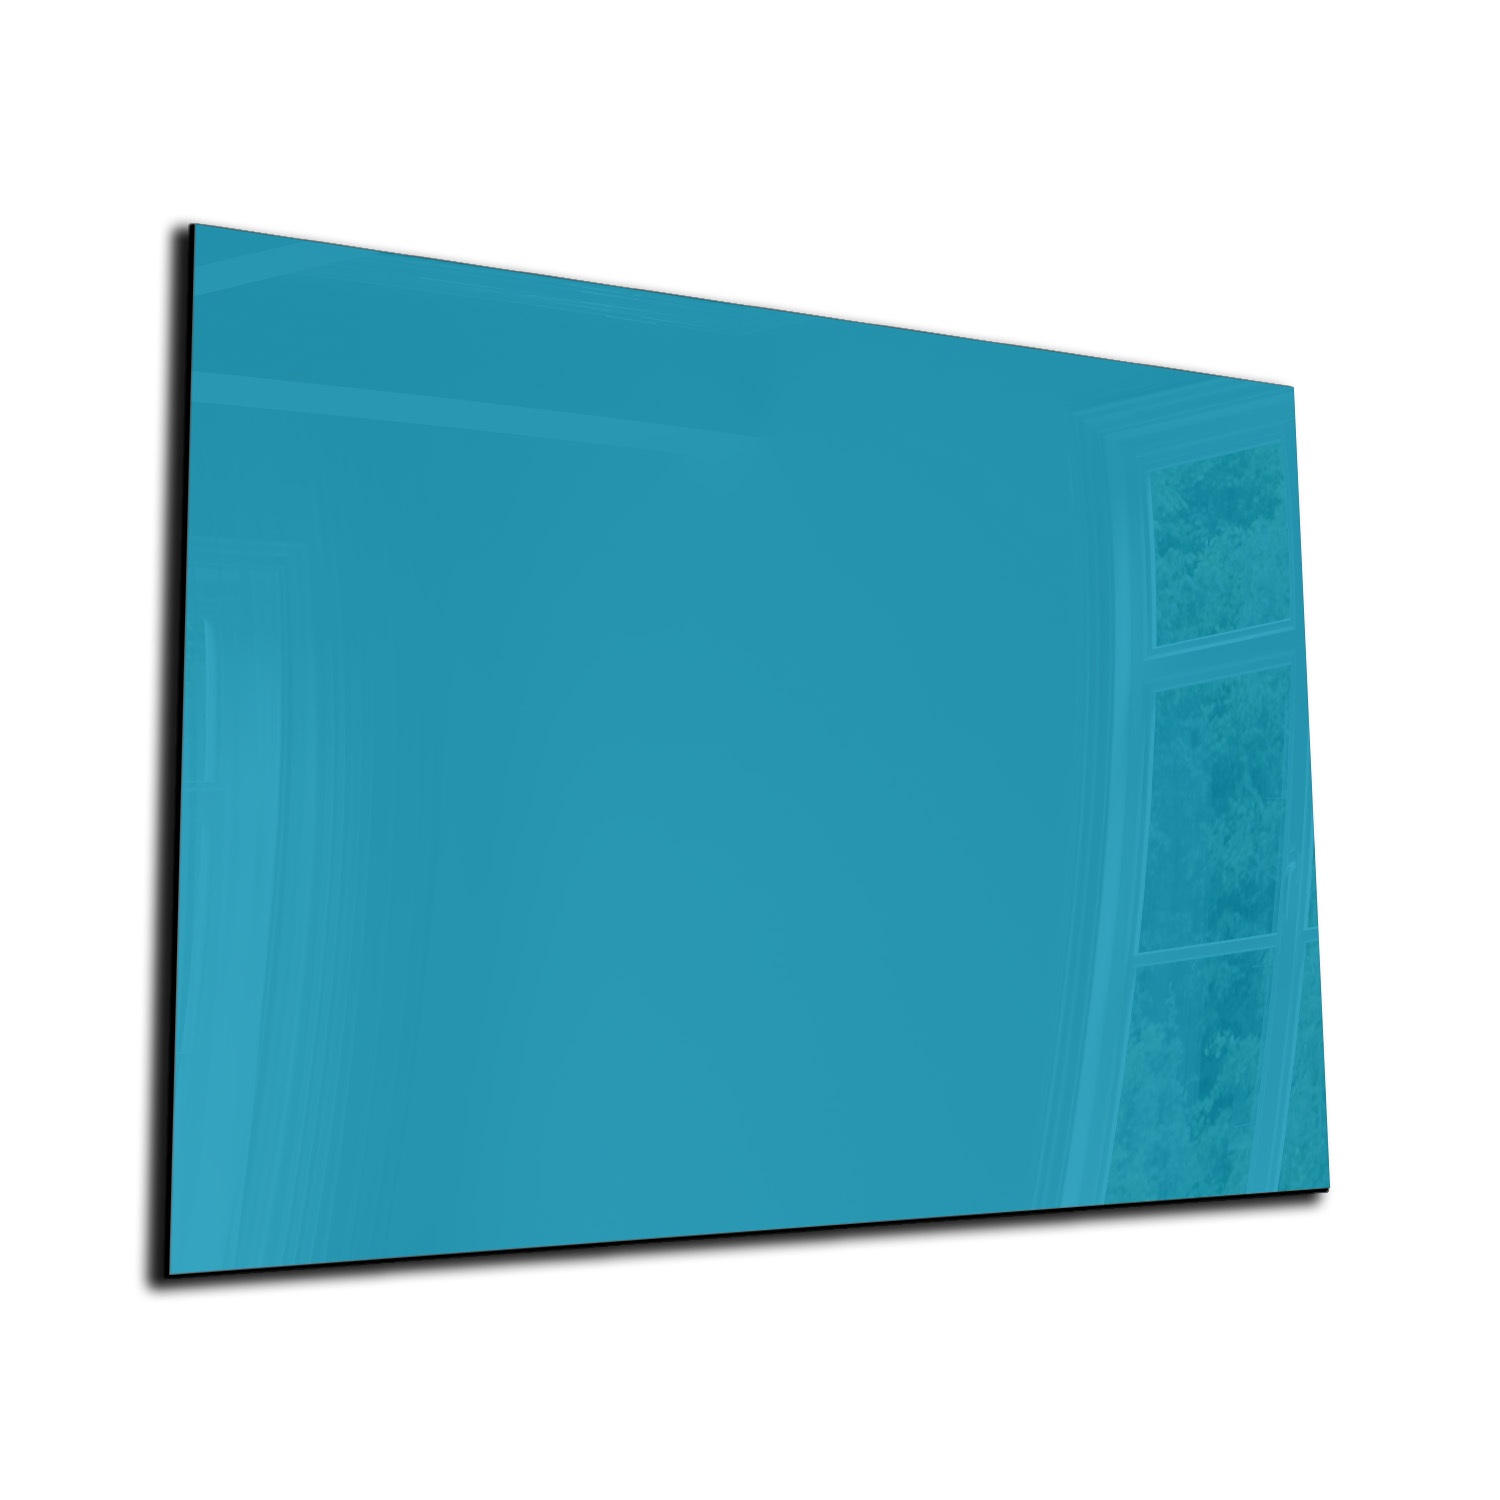 omverwerping Toneelschrijver eeuw Magneetbord - Glas - Whiteboard - Memobord - Magnetisch - Diverse maten -  Kleur Turkoois - Designglas